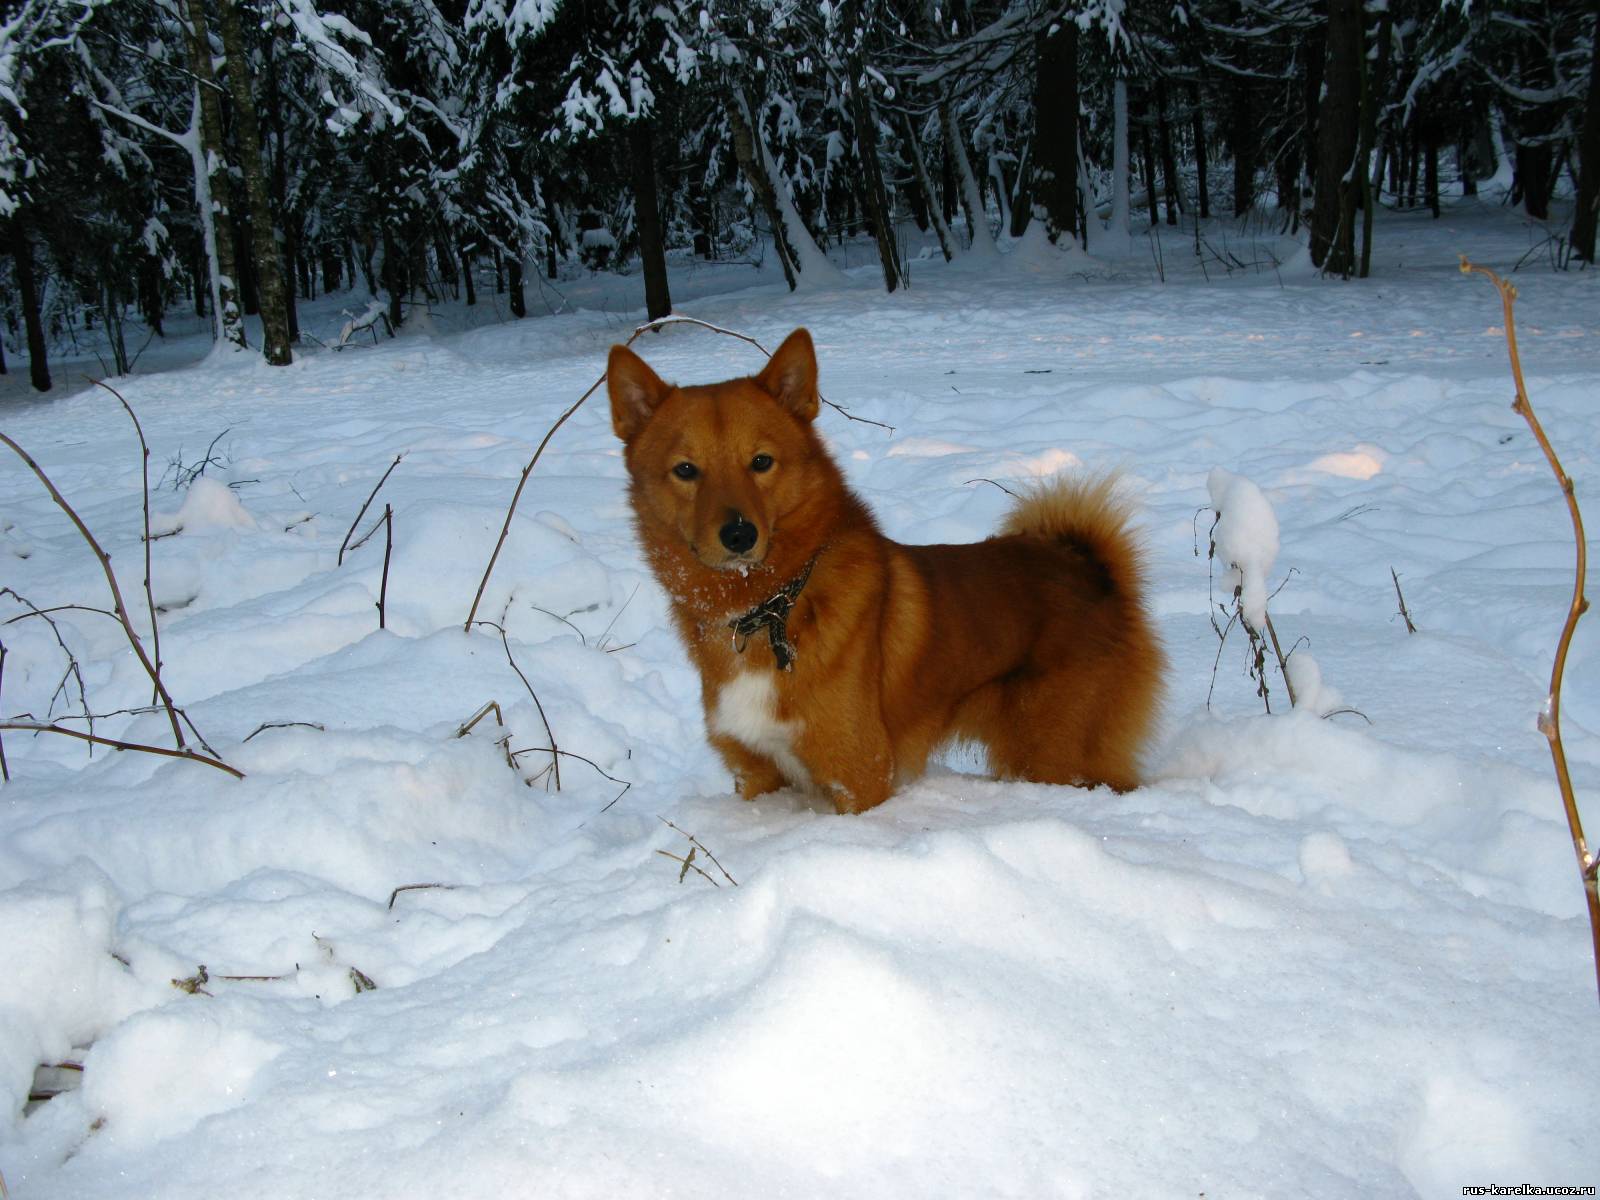 Fotografije karelijsko-finskog huskija u snijegu